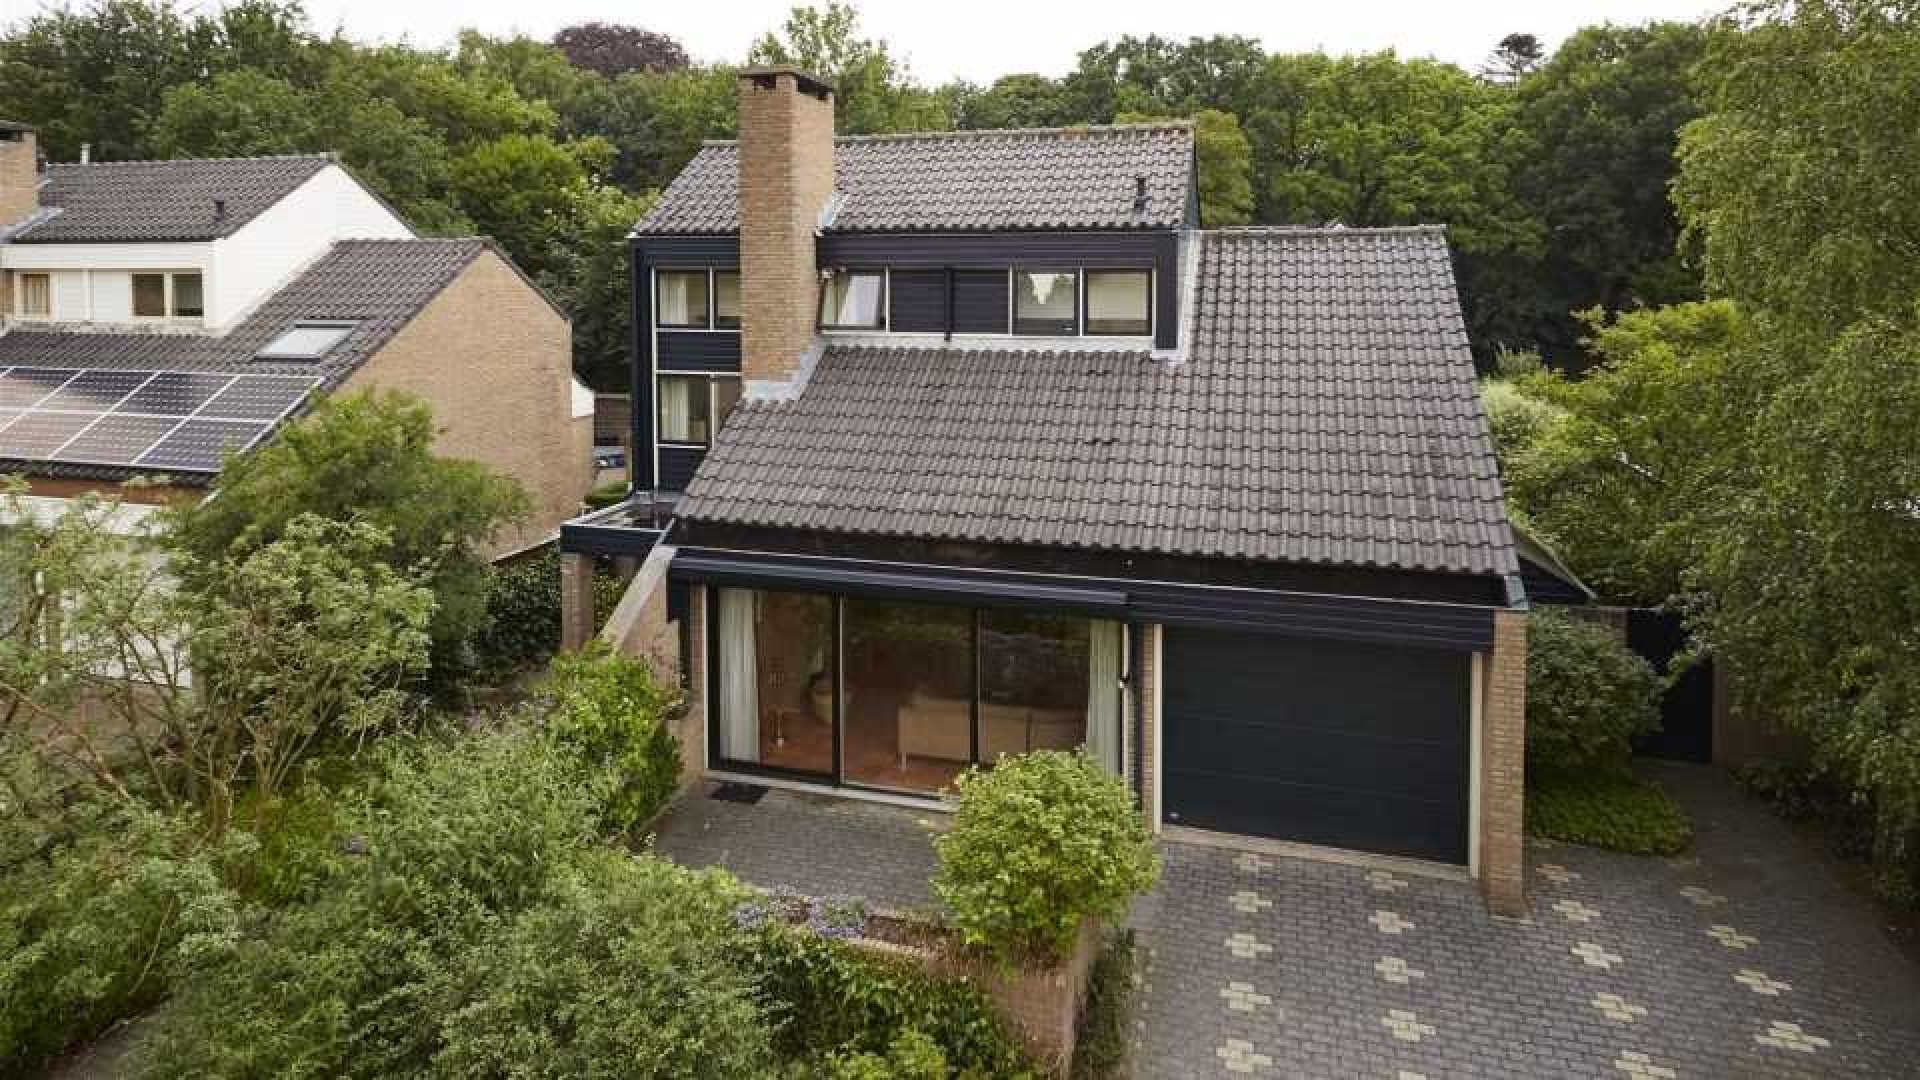 Voormalig NOS Journaal presentator Gijs Wanders zet zijn familiehuis te koop. Zie foto's 1